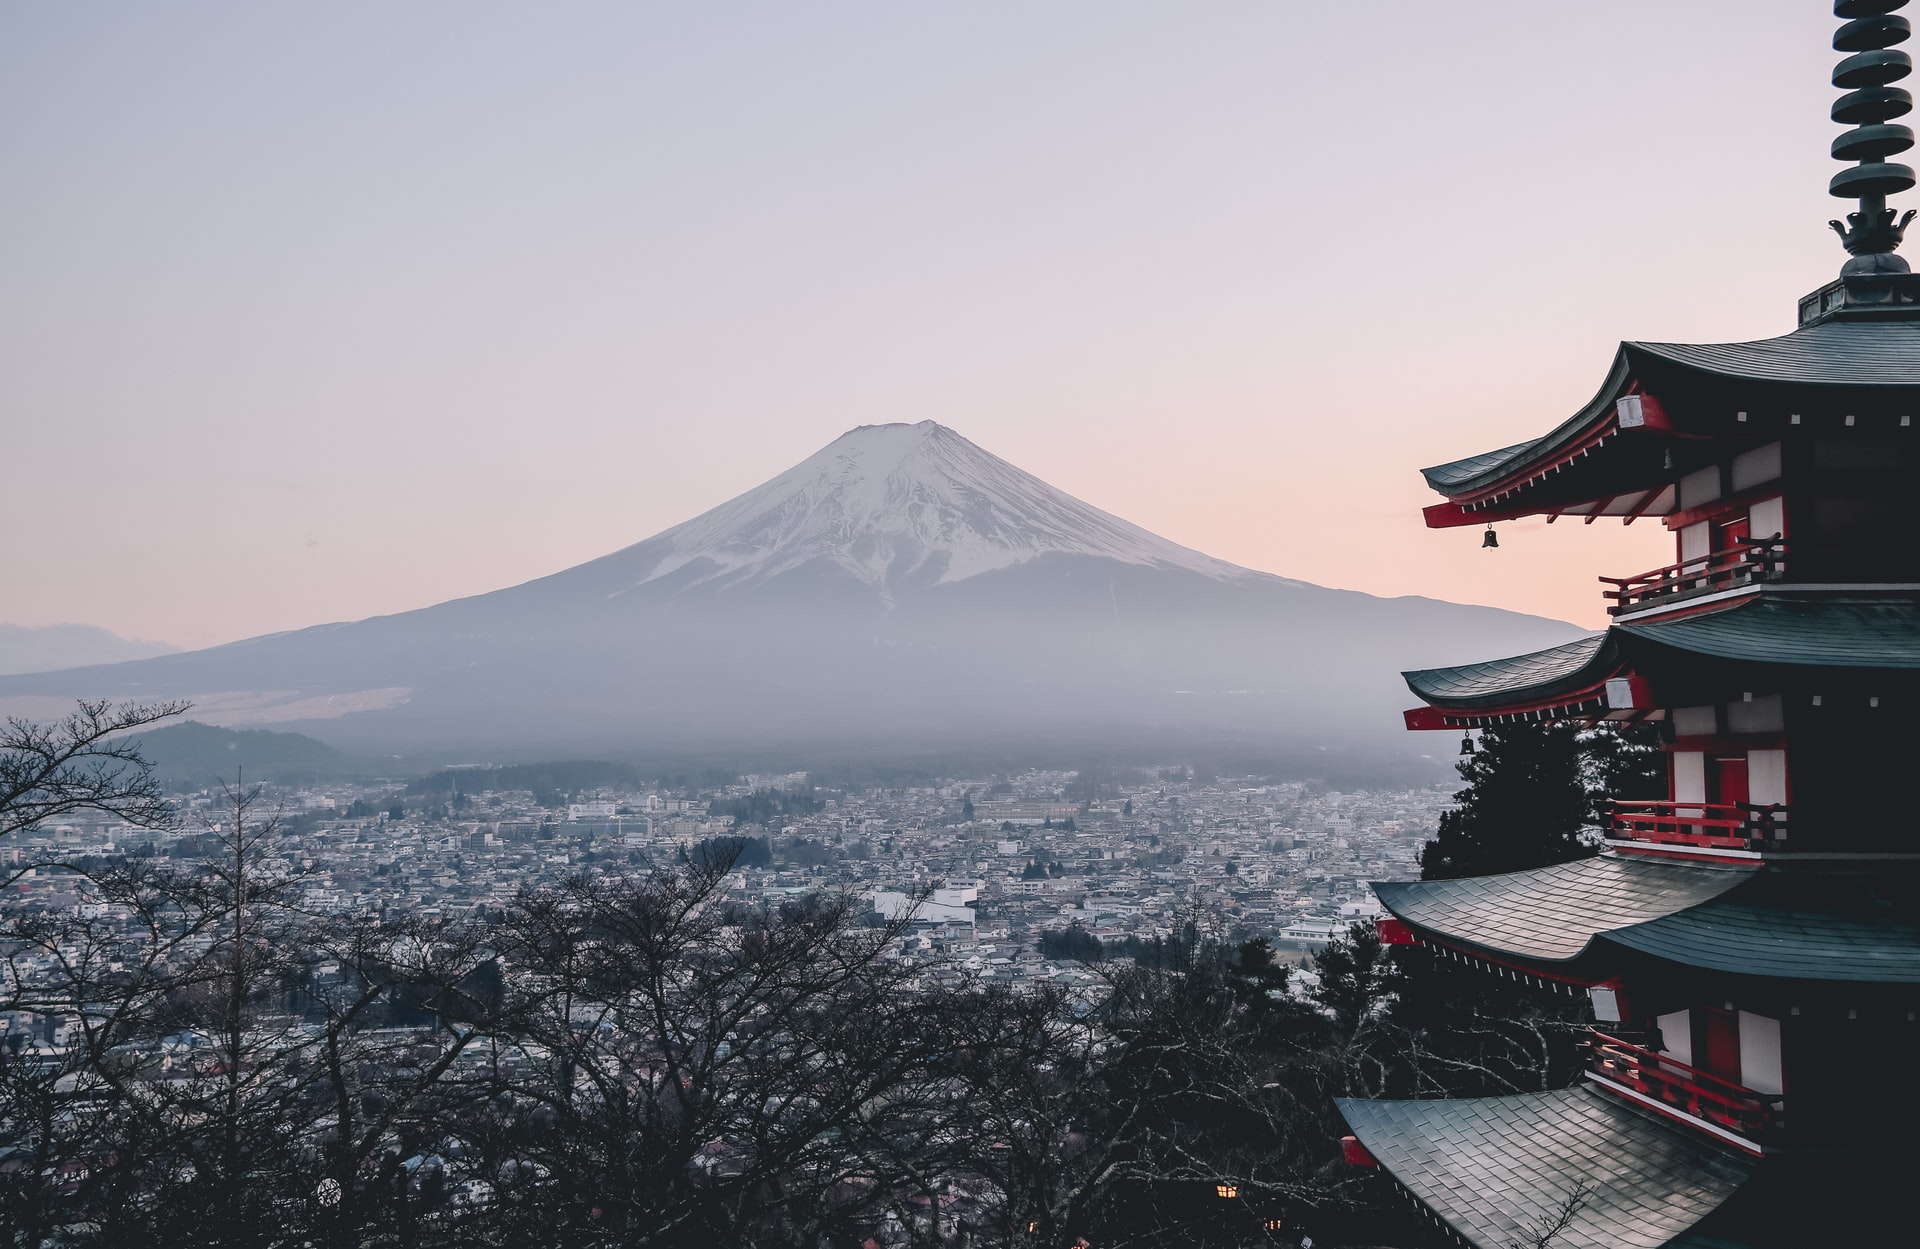 海外生活 ペルー共和国と比較した 日本の凄いところ7選をピックアップ タキータblog